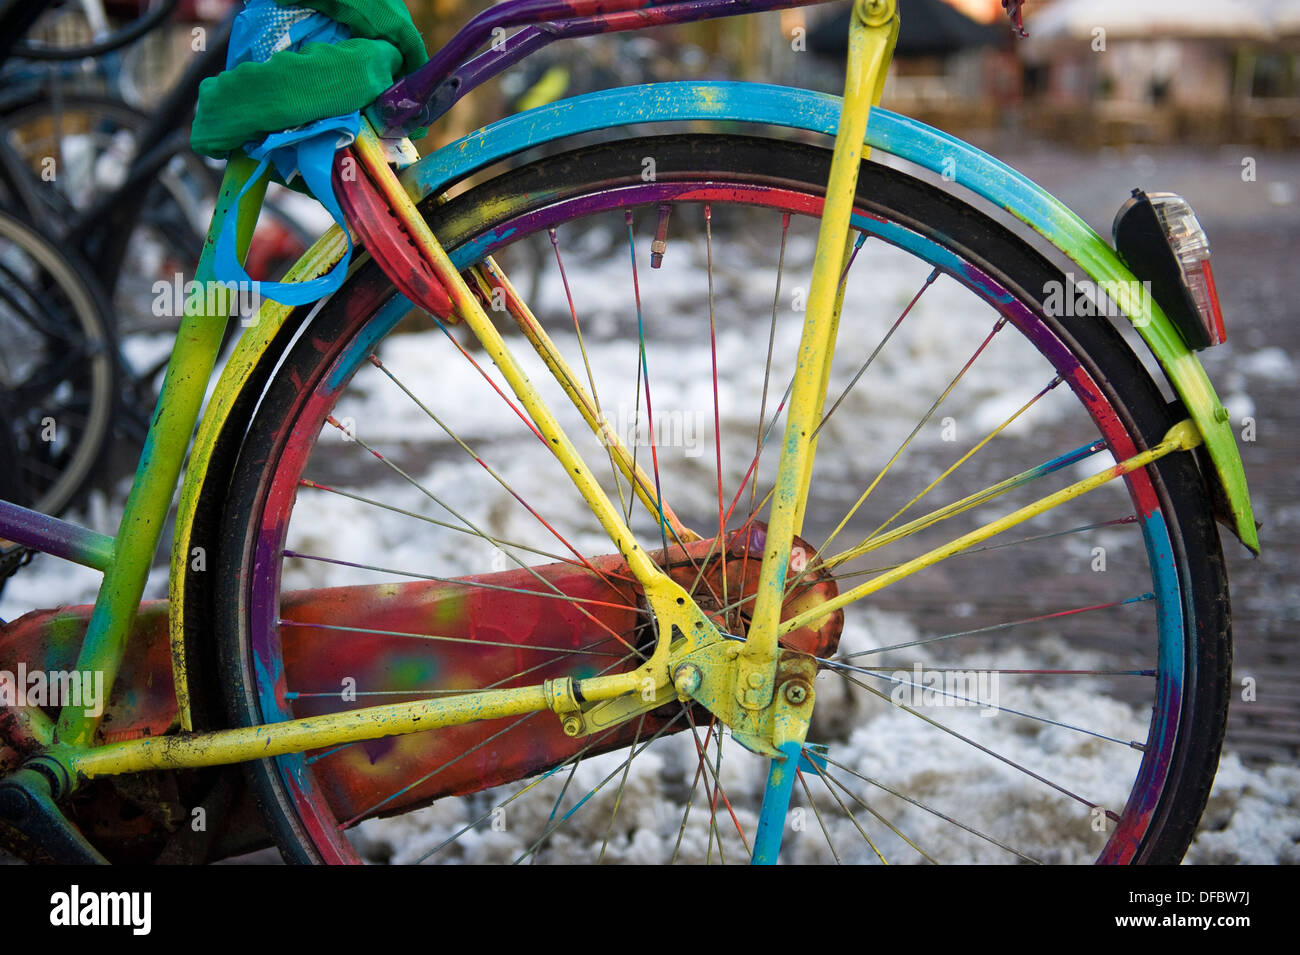 Vélo hollandais peint en différentes couleurs, closeup détail, Amersfoort, Pays-Bas Banque D'Images